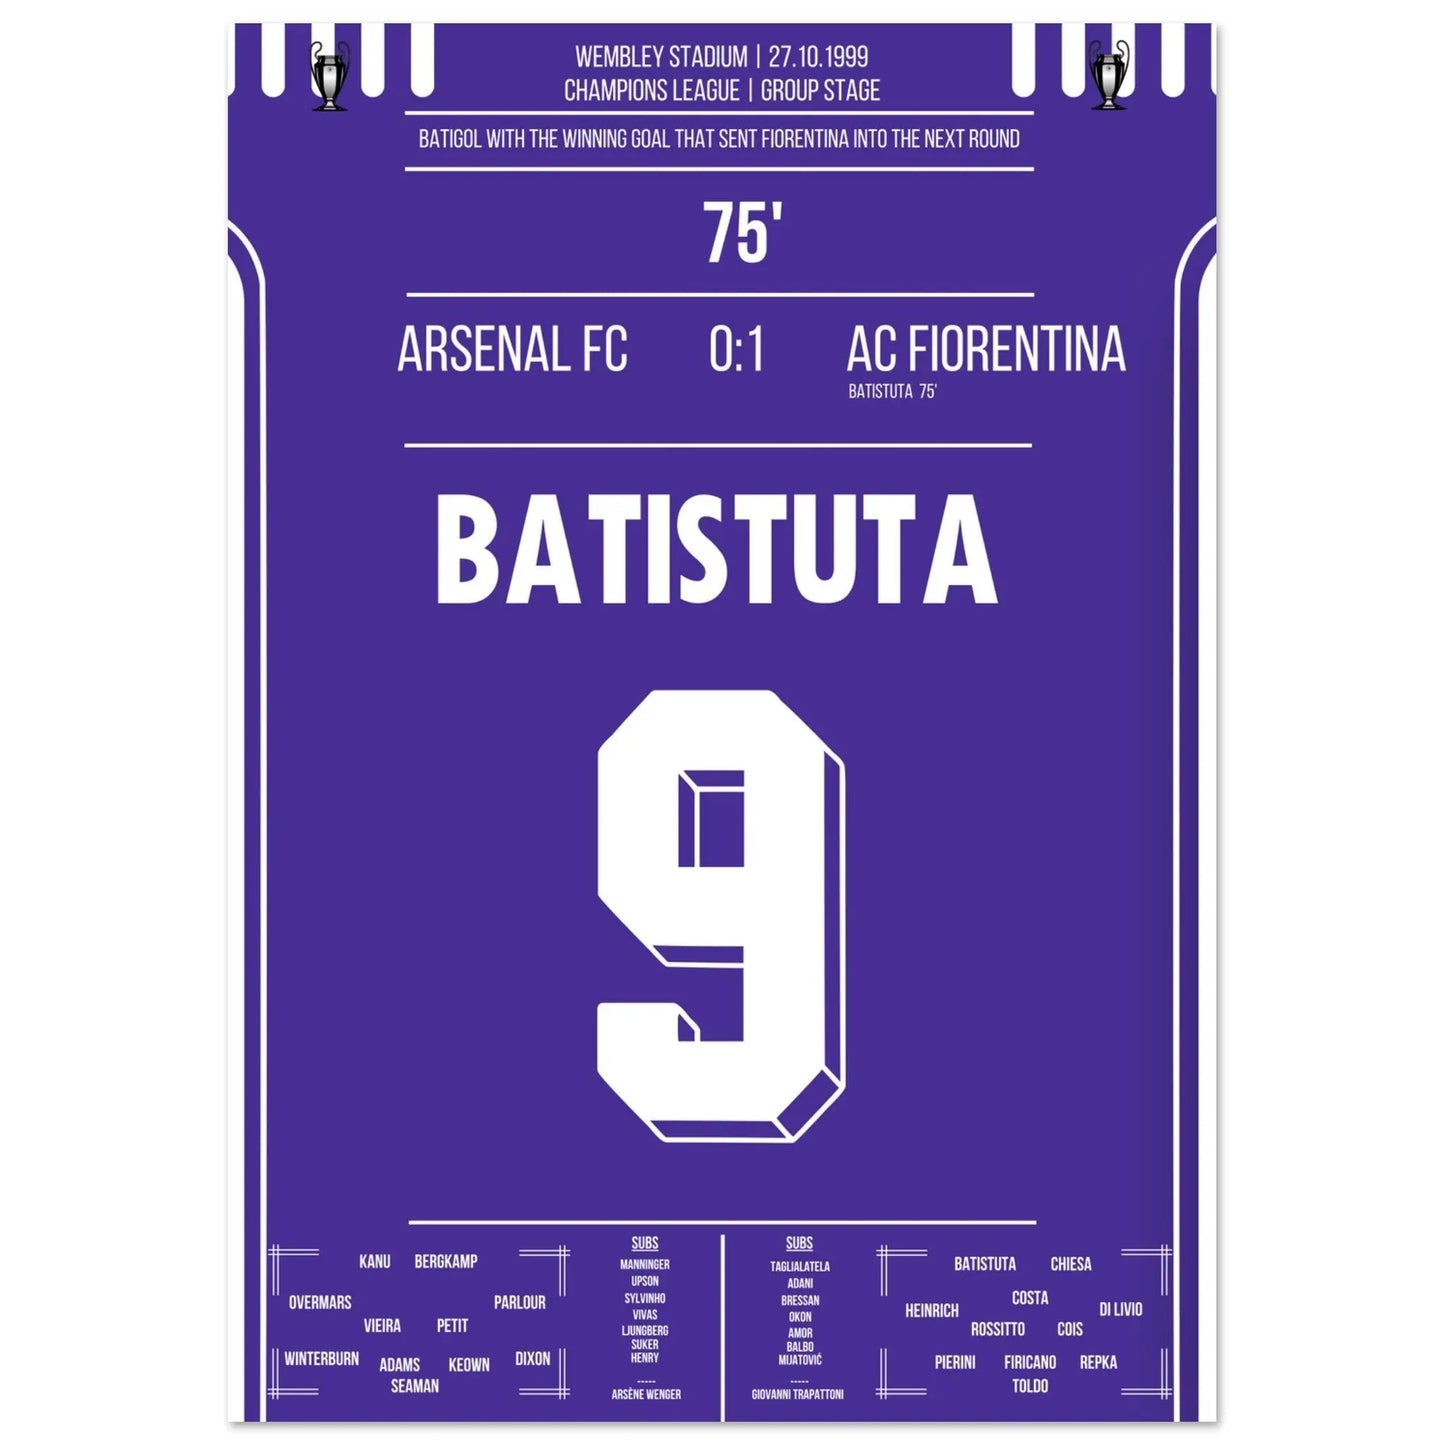 Batistuta schießt die Fiorentina in die nächste Runde Champions League 1999/00